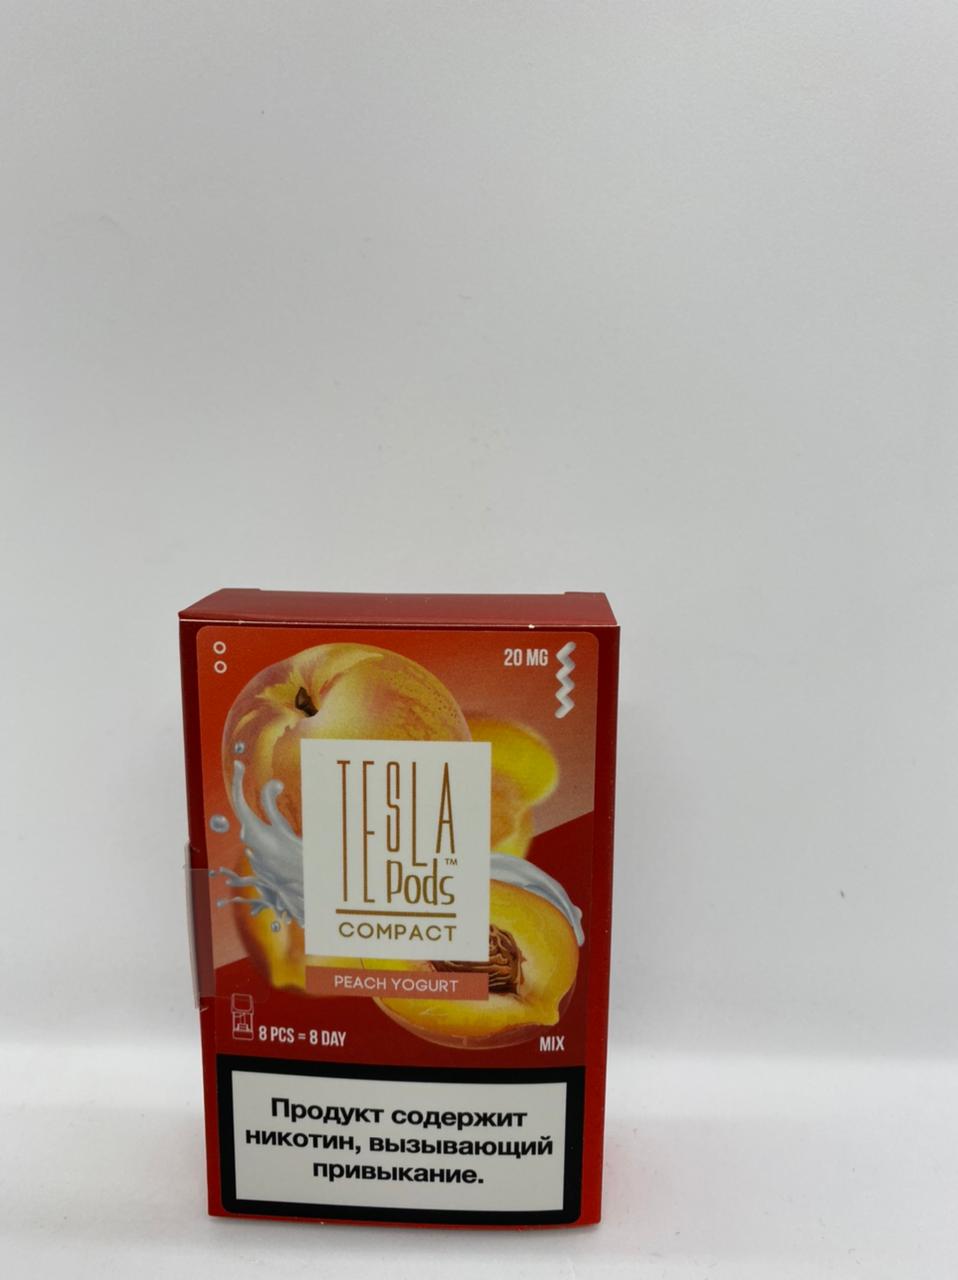 Набор TESLA pods Картридж Peach yogurt 2% (8 картриджей) compact для Logic с доставкой по Москве и России